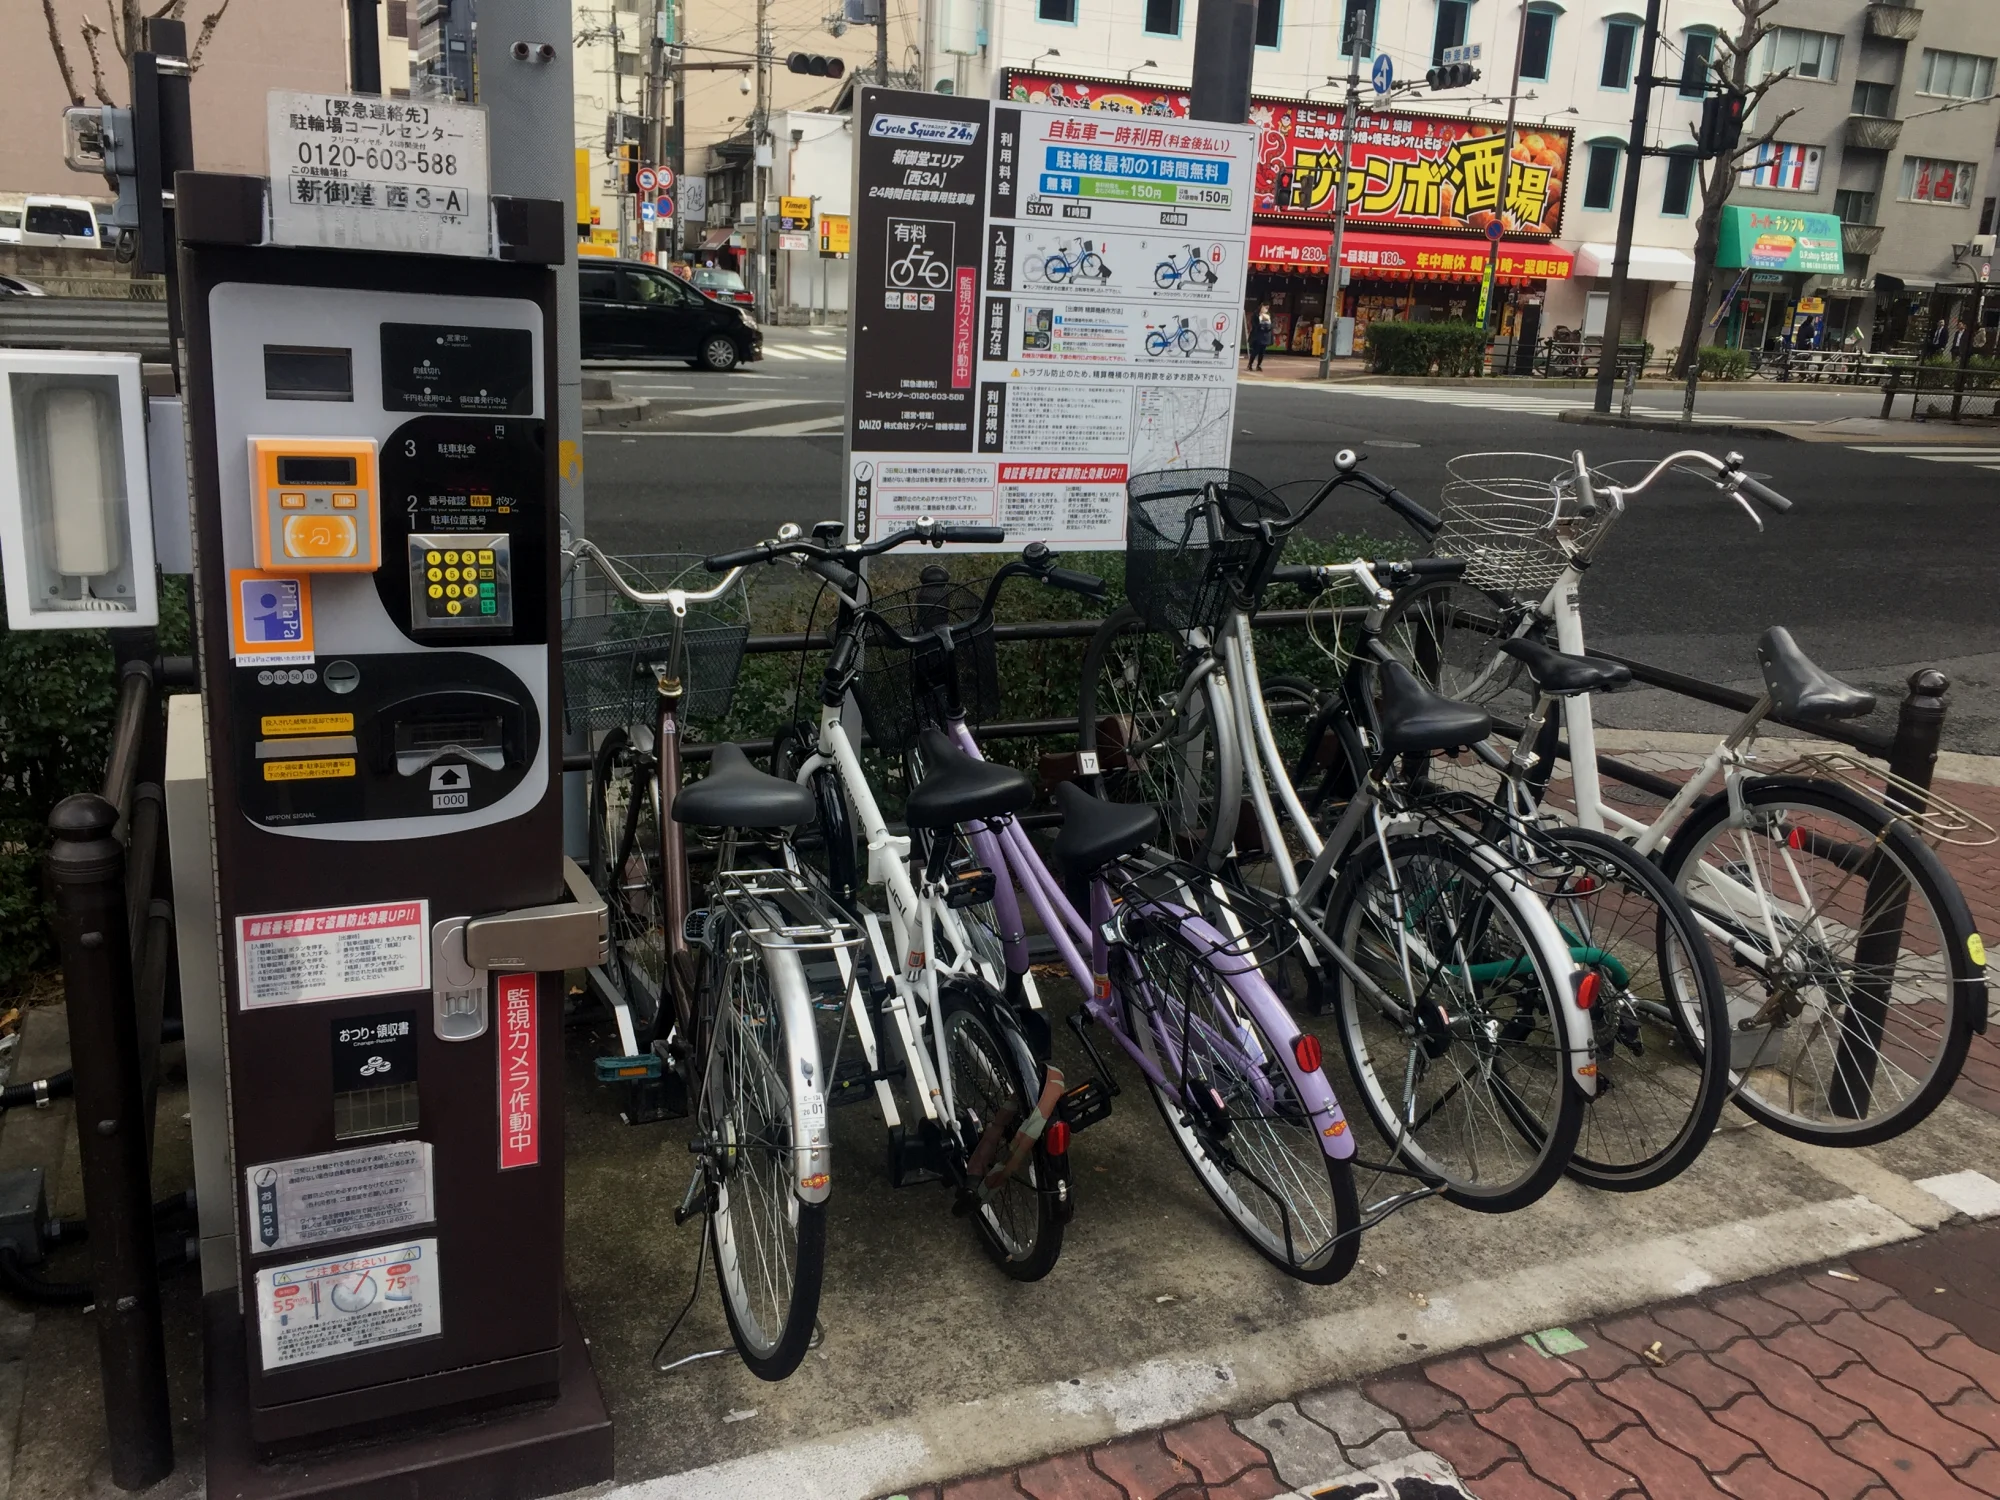 大阪街头的收费自行车停车场，全天都有摄像监控，不当使用会被处罚